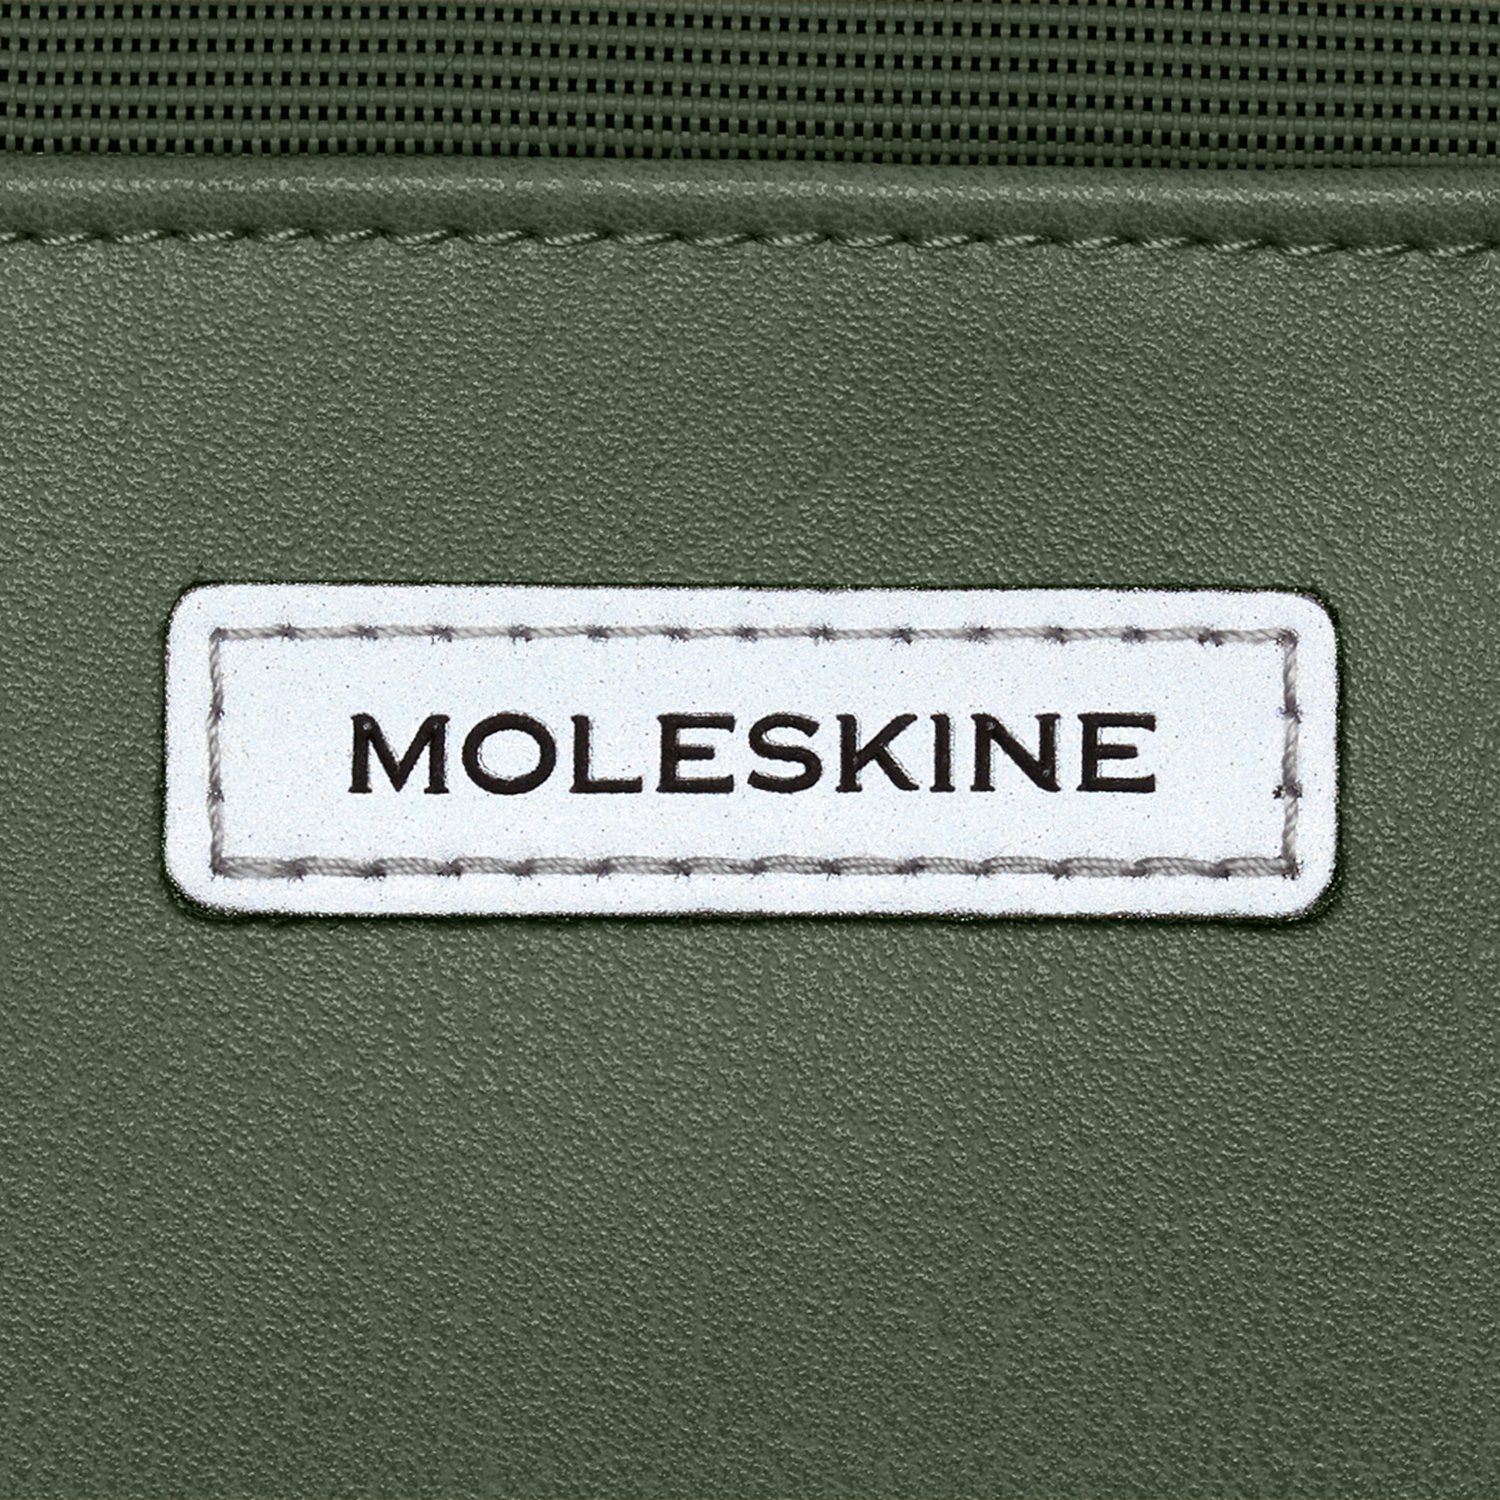 MOLESKINE Grün Hochformat-Gerätetasche - Metro Laptoprucksack,